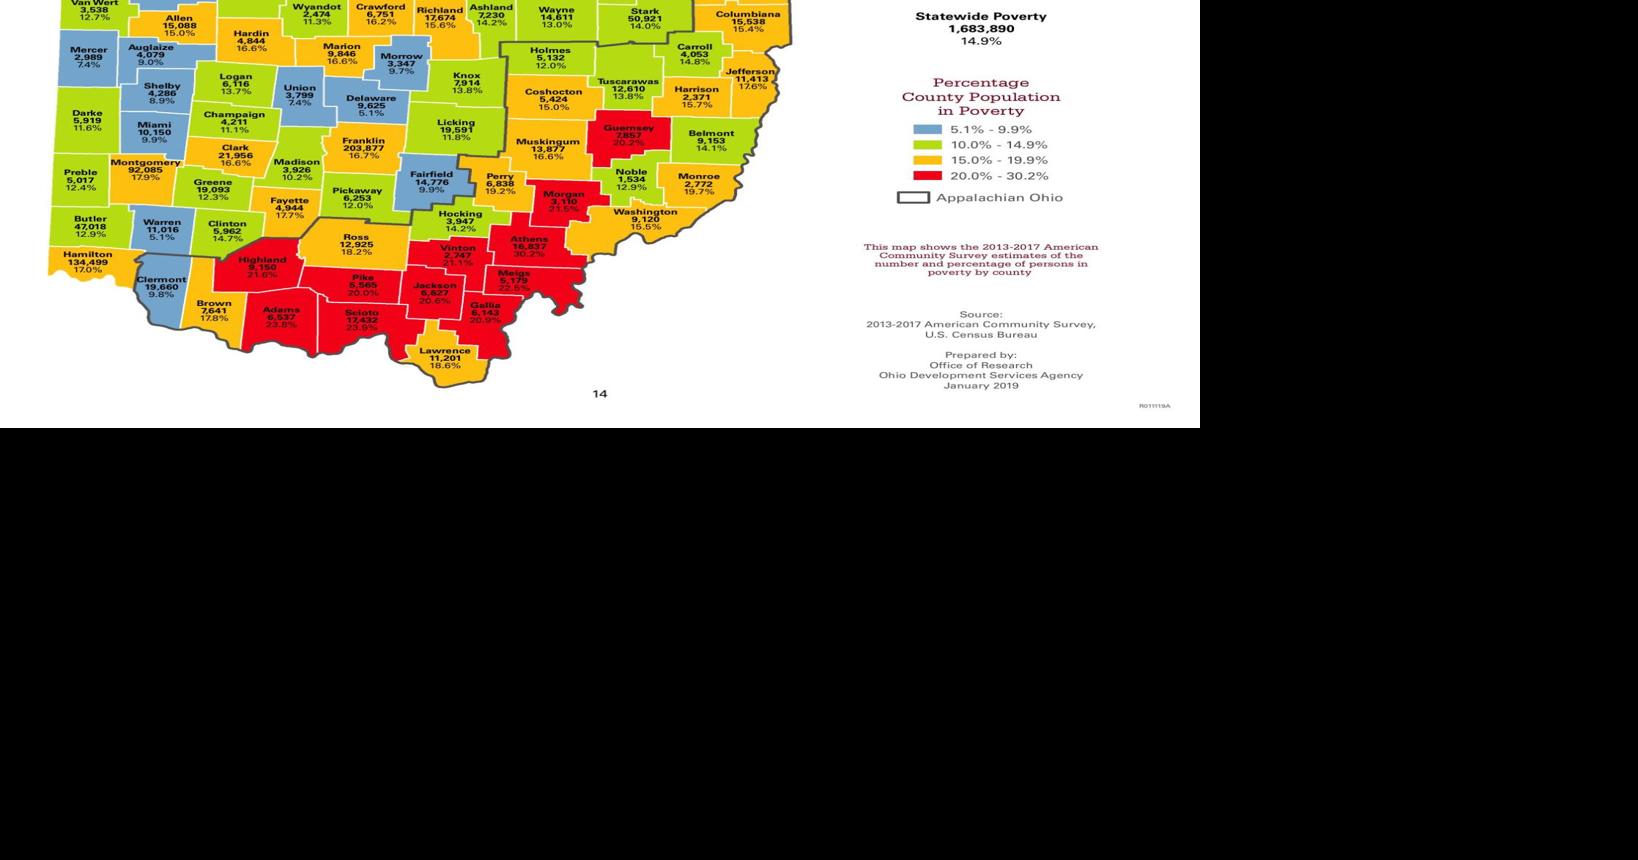 Ohio poverty graph